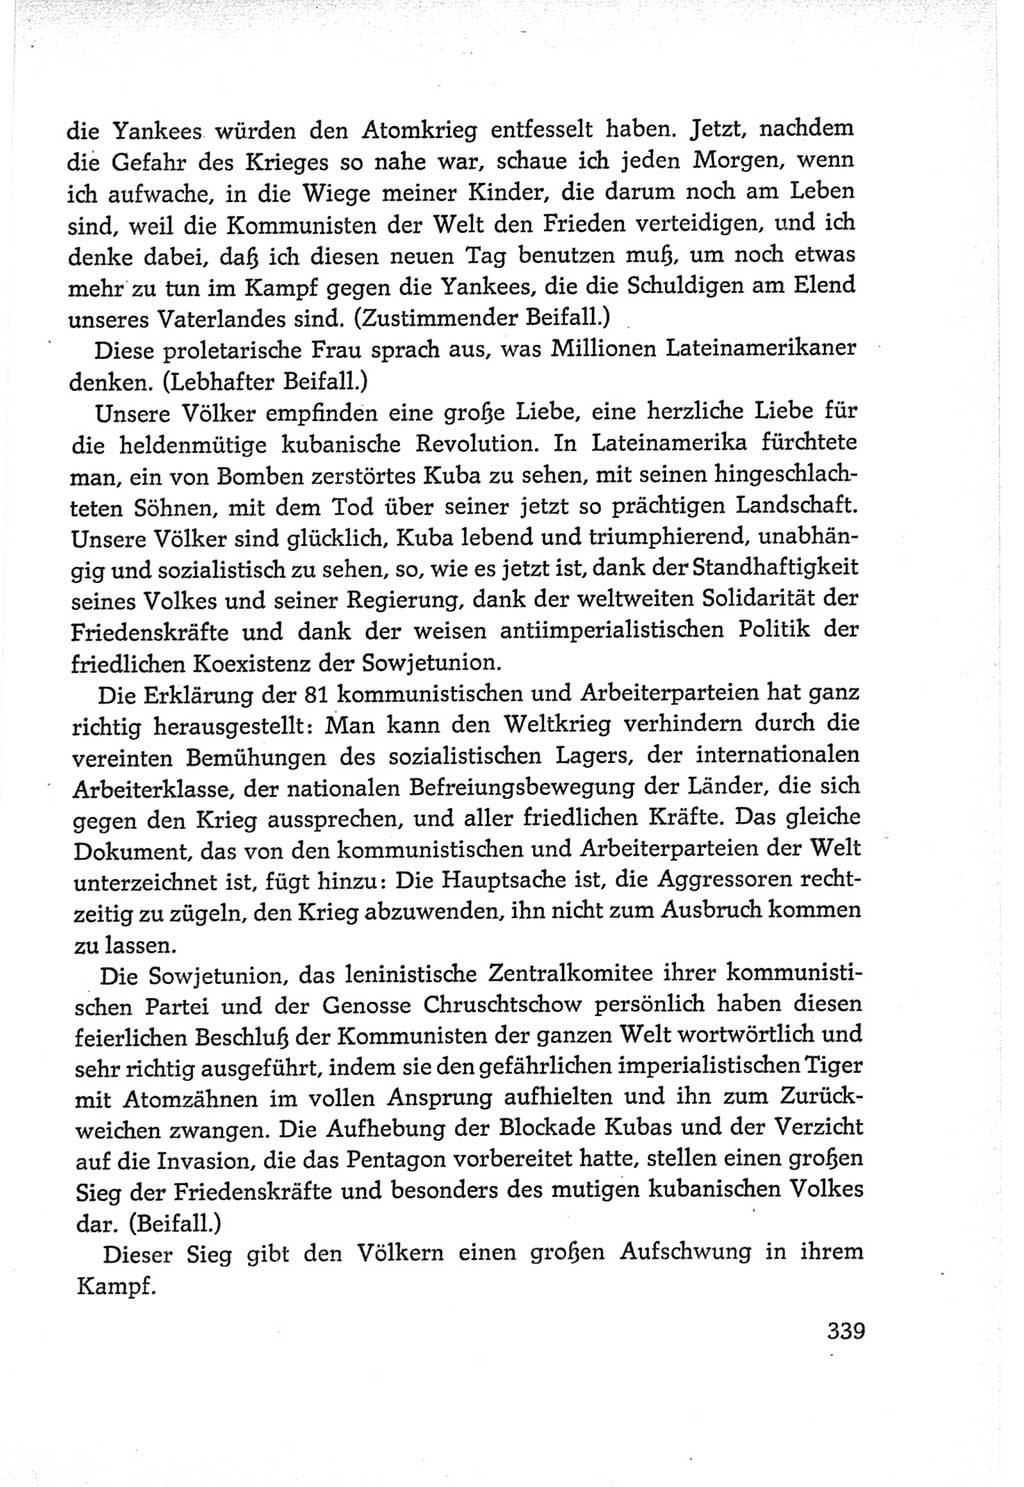 Protokoll der Verhandlungen des Ⅵ. Parteitages der Sozialistischen Einheitspartei Deutschlands (SED) [Deutsche Demokratische Republik (DDR)] 1963, Band Ⅱ, Seite 339 (Prot. Verh. Ⅵ. PT SED DDR 1963, Bd. Ⅱ, S. 339)